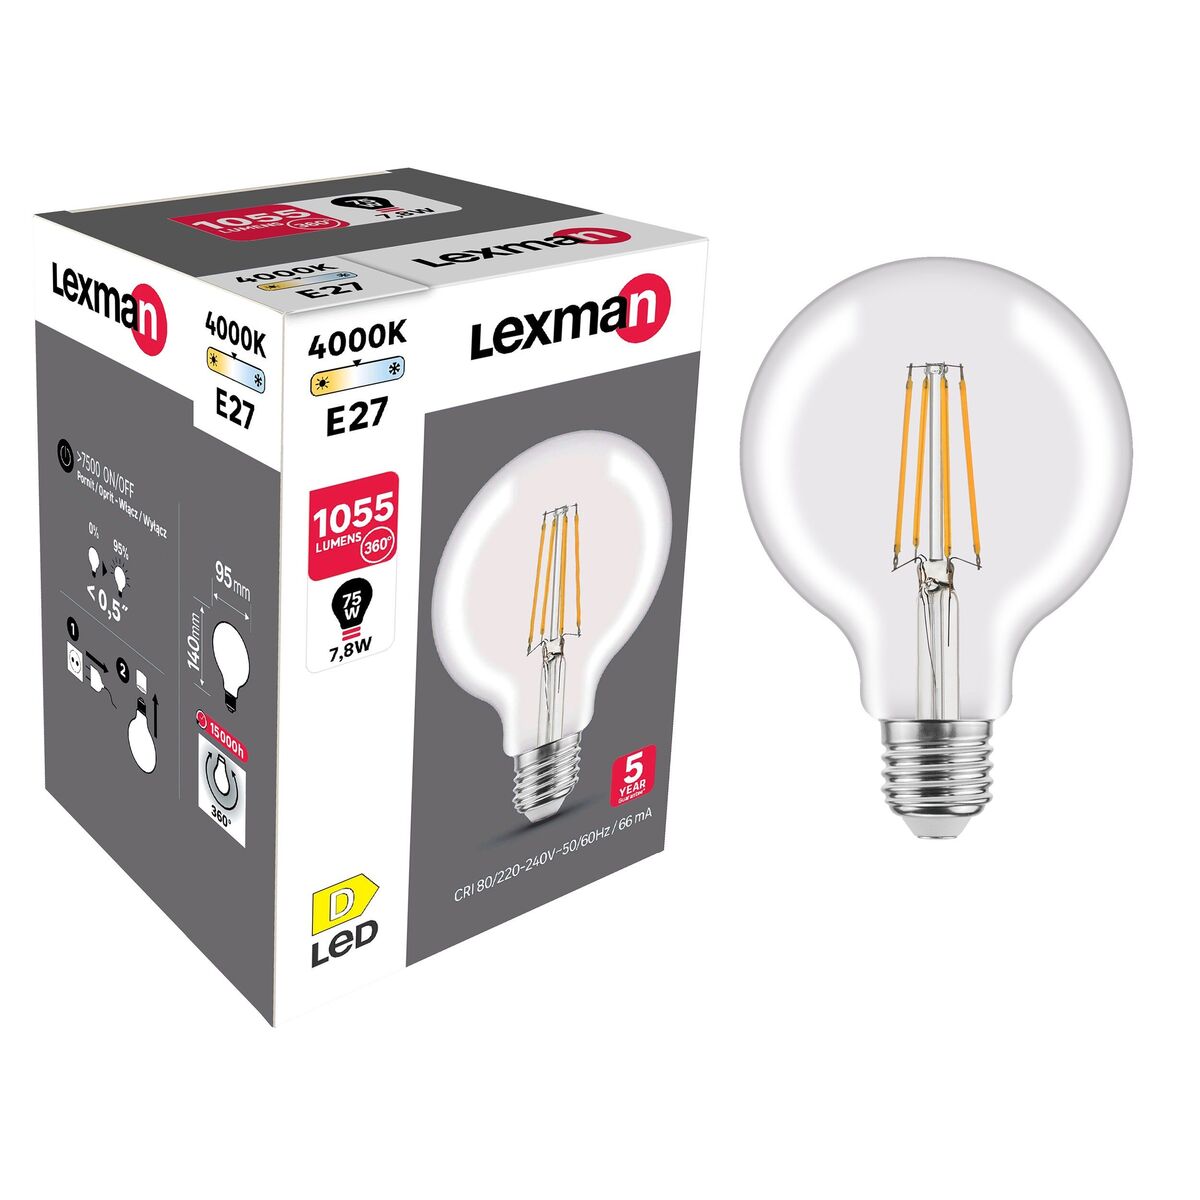 Żarówka LED E27 7,8 W = 75 W 1055 lm Neutralna biel Lexman